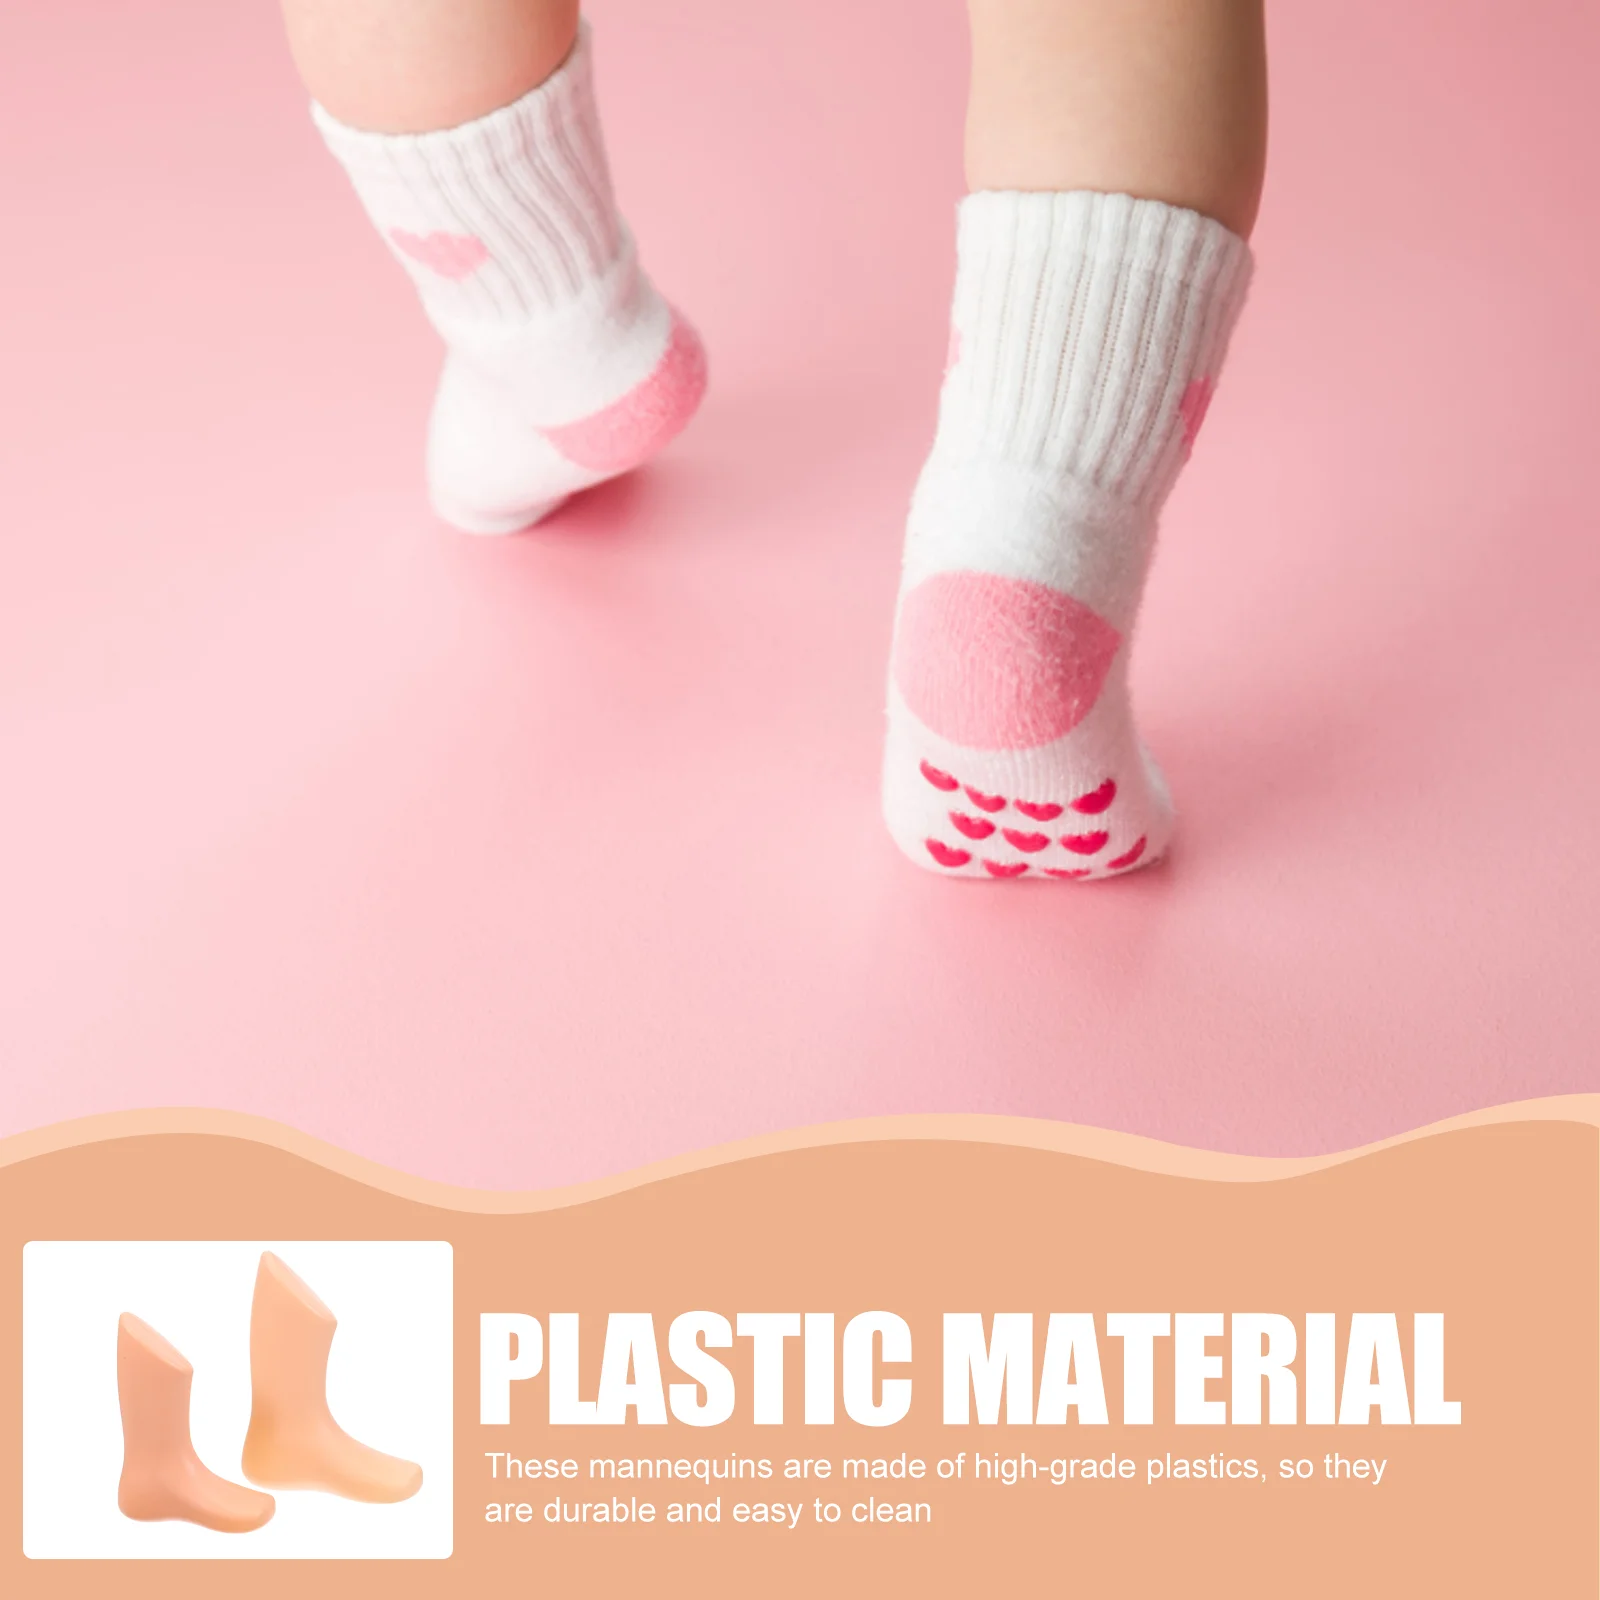 Манекен для детских ног, пластиковые модели ног, обувь для малышей, поддержка обуви, формы, стенд, дисплей носков